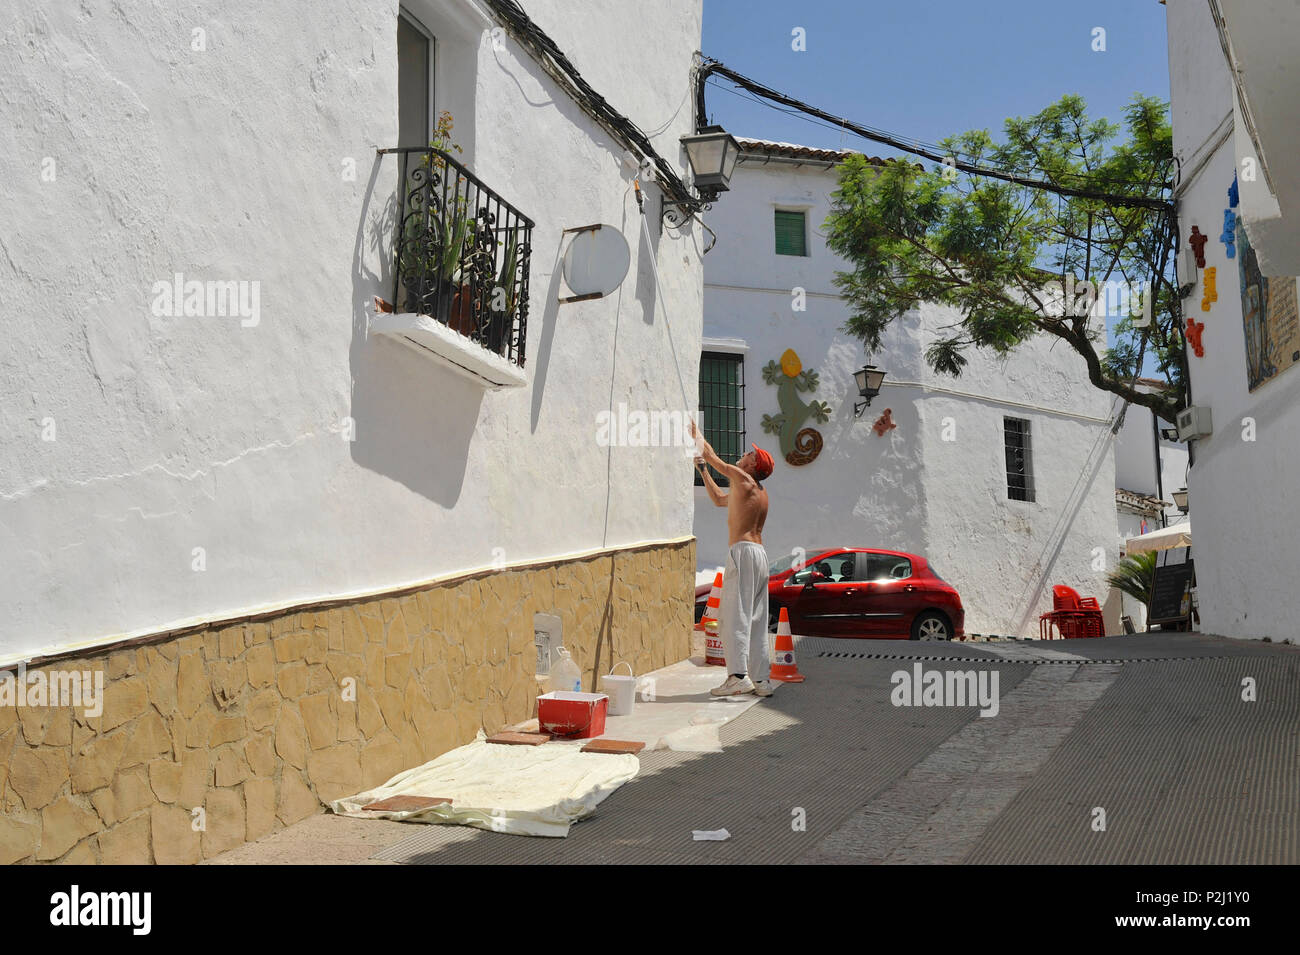 Man painting house white dans Gaucin, Serrania de Ronda, Malaga, Provinz Andalusien, Spanien Banque D'Images